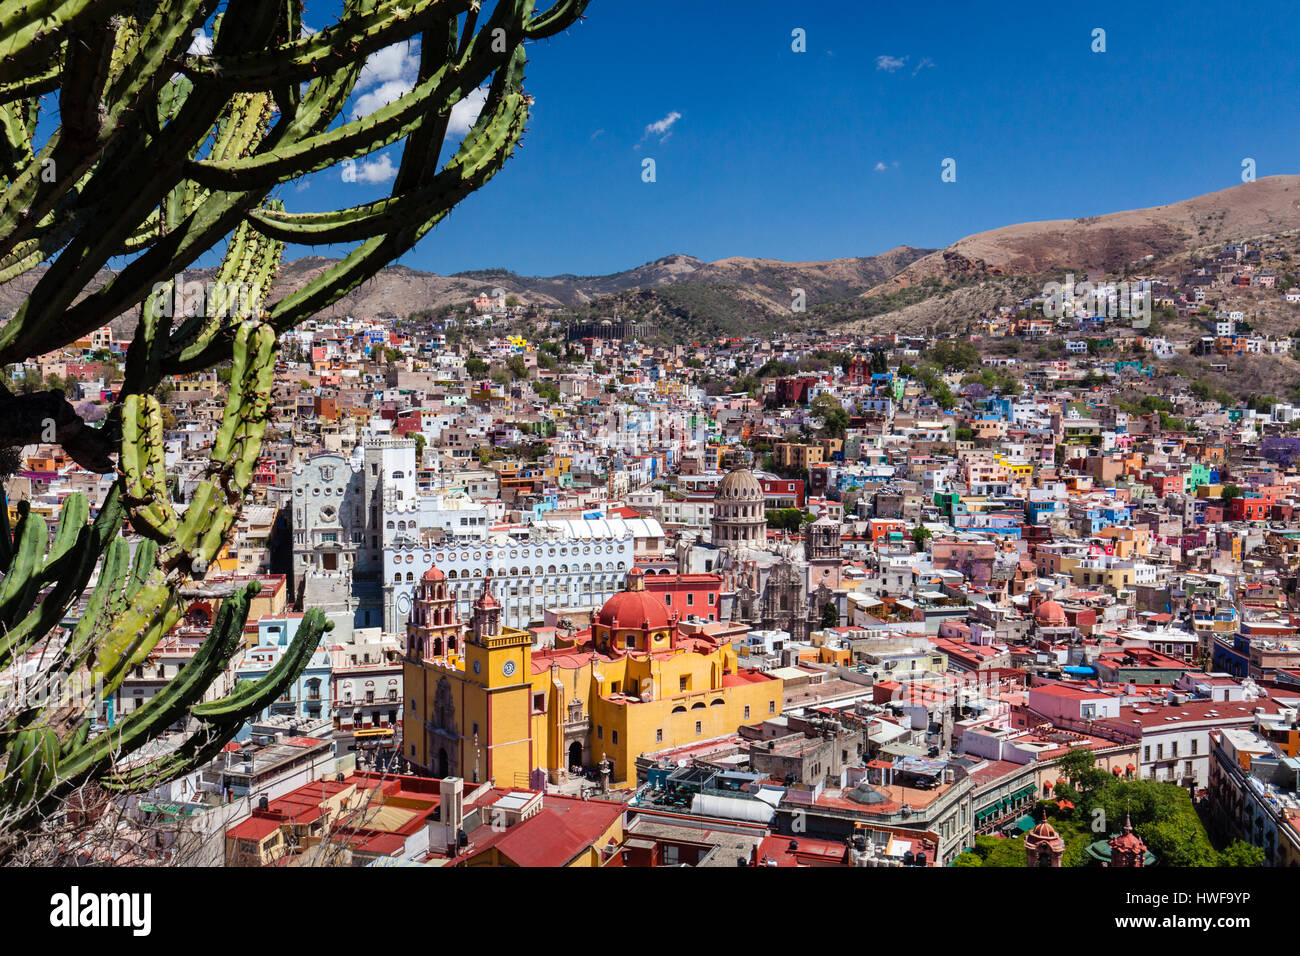 La città coloniale di Guanajuato, Messico. Foto Stock